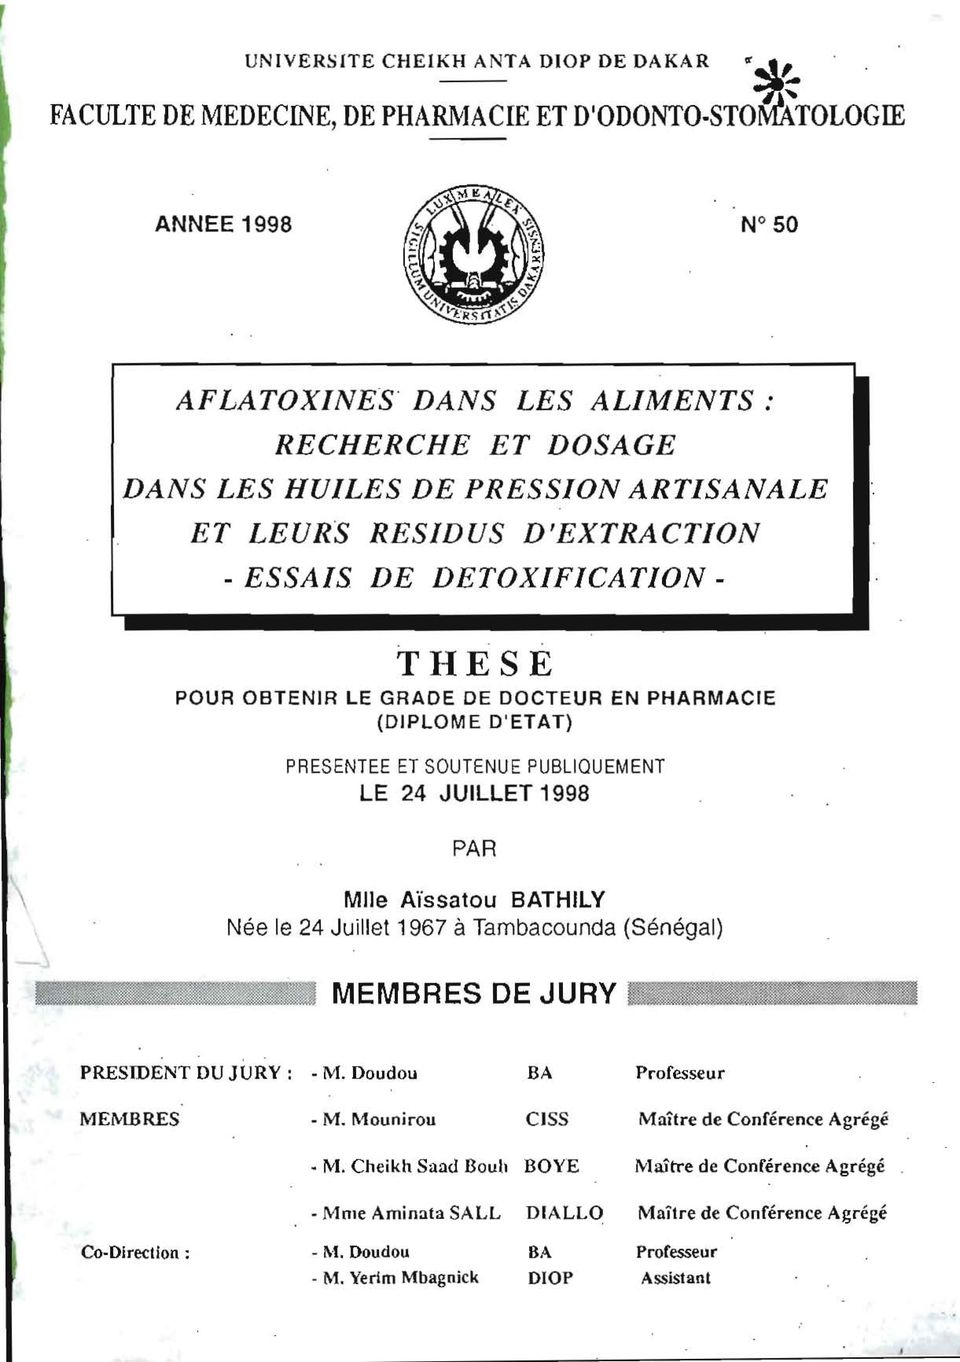 . THESE POUR OBTENIR LE GRADE DE DOCTEUR EN PHARMACIE (DIPLOME D'ETAT) PRESENTEE ET SOUTENUE PUBLIOUEMENT LE 24 JUILLET 1998 PAR Mlle Aïssatou BATHILY Née le 24 Juillet 1967 à Tambacounda